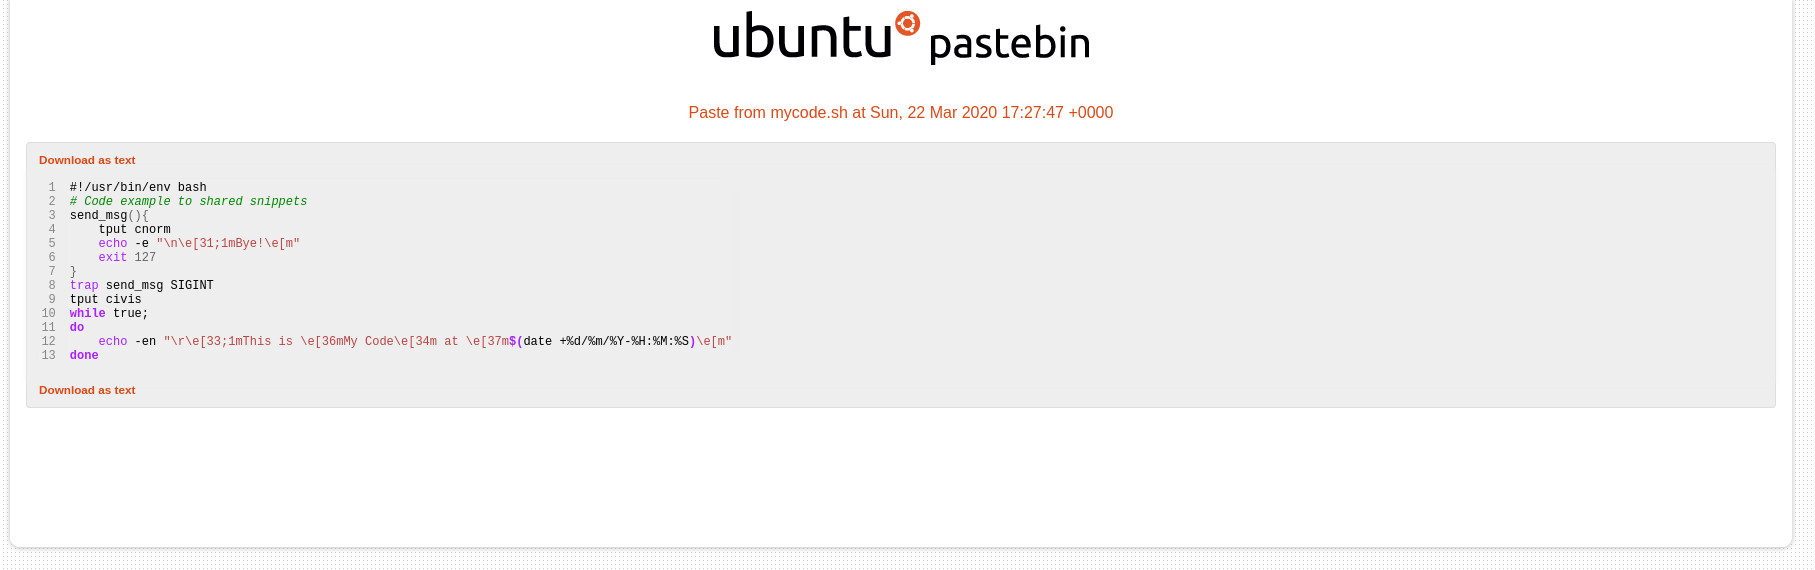 Ubuntu PasteBin code